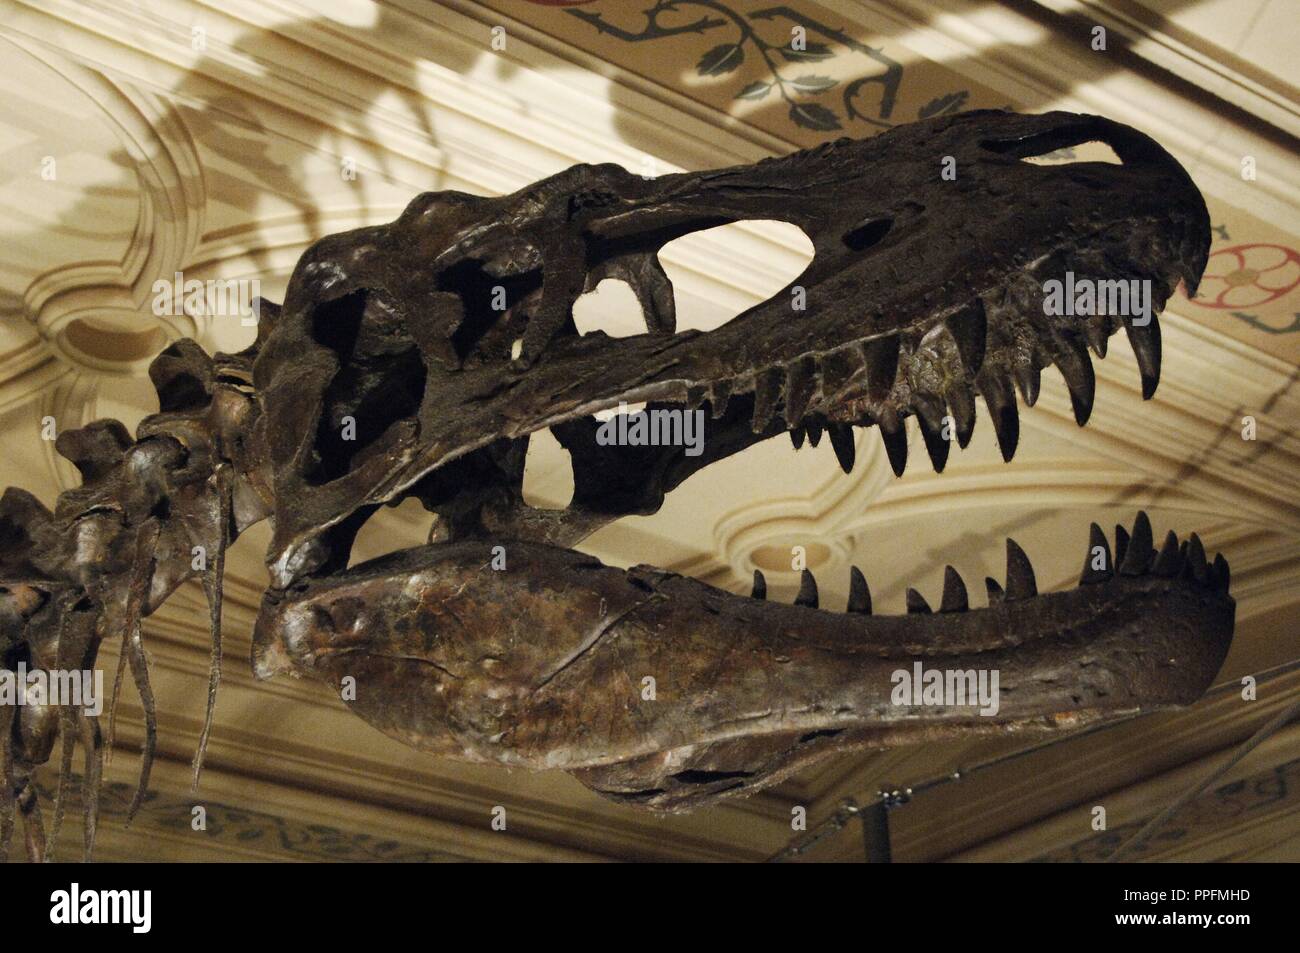 Crâne d'Albertosaurus sarcophagus. Prédateur bipède du Crétacé supérieur. 70 millions d'années. Musée d'histoire naturelle. Londres. United Kingdom. Banque D'Images